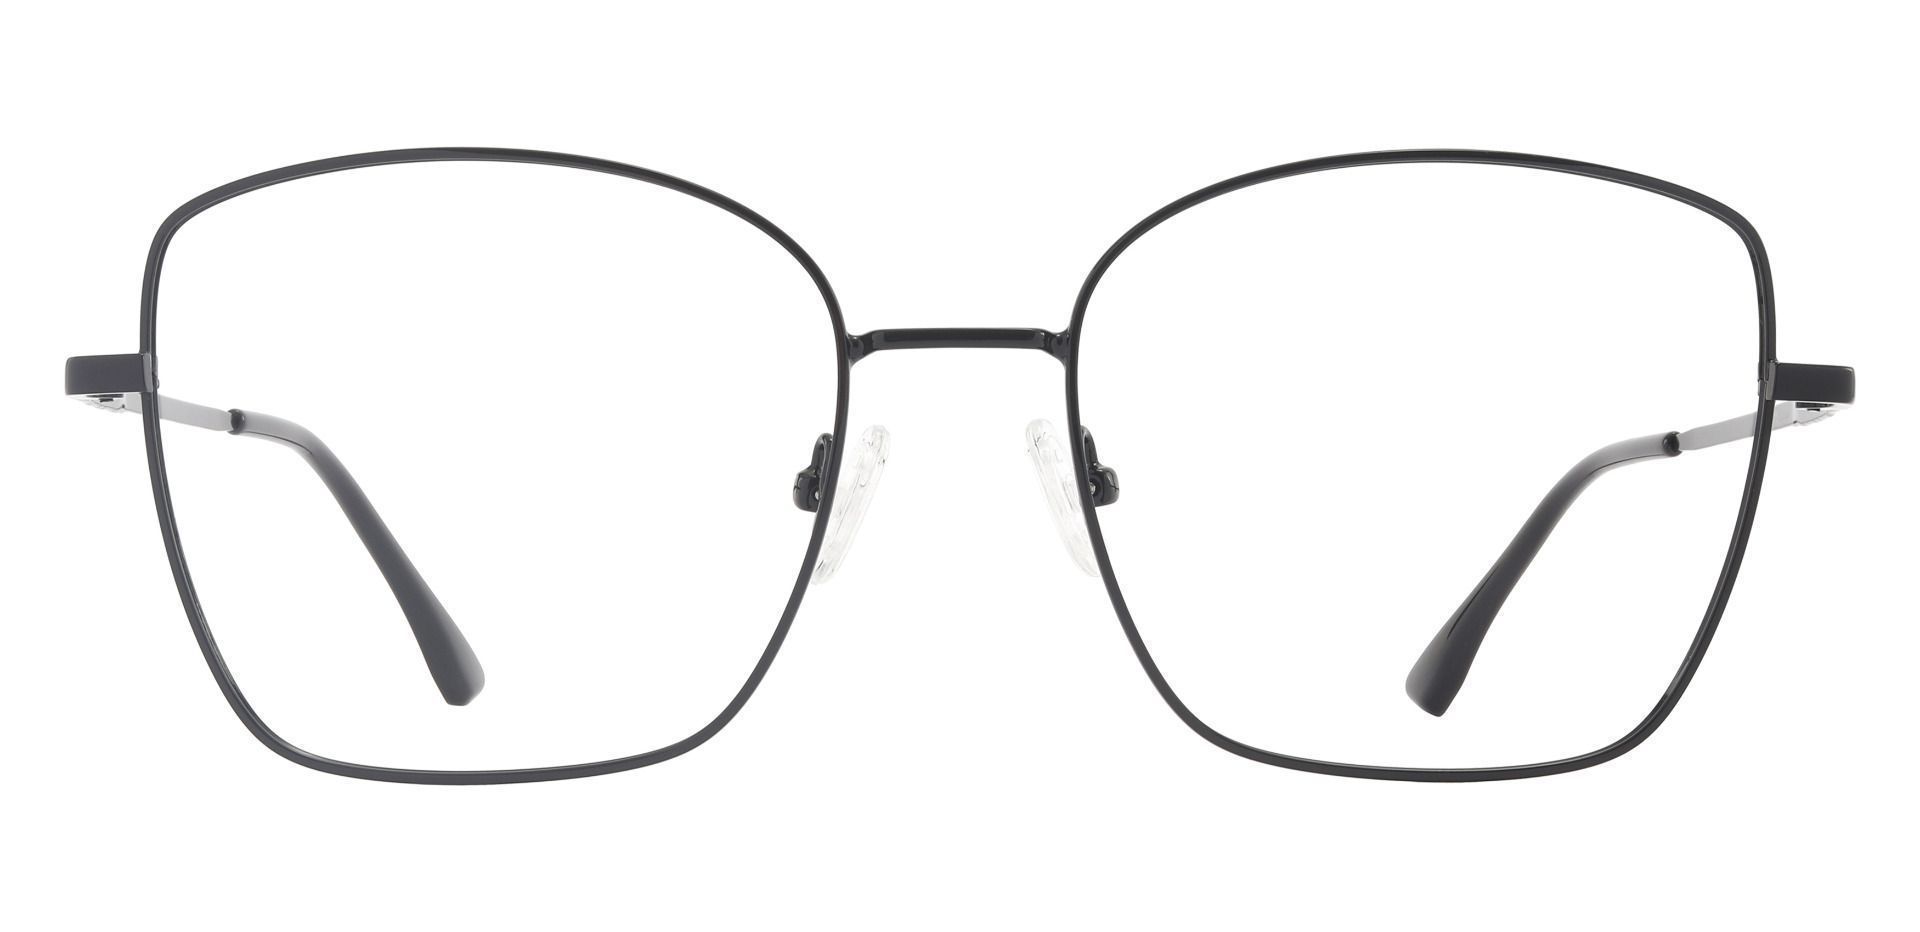 Augusta Square Prescription Glasses Black Men S Eyeglasses Payne Glasses